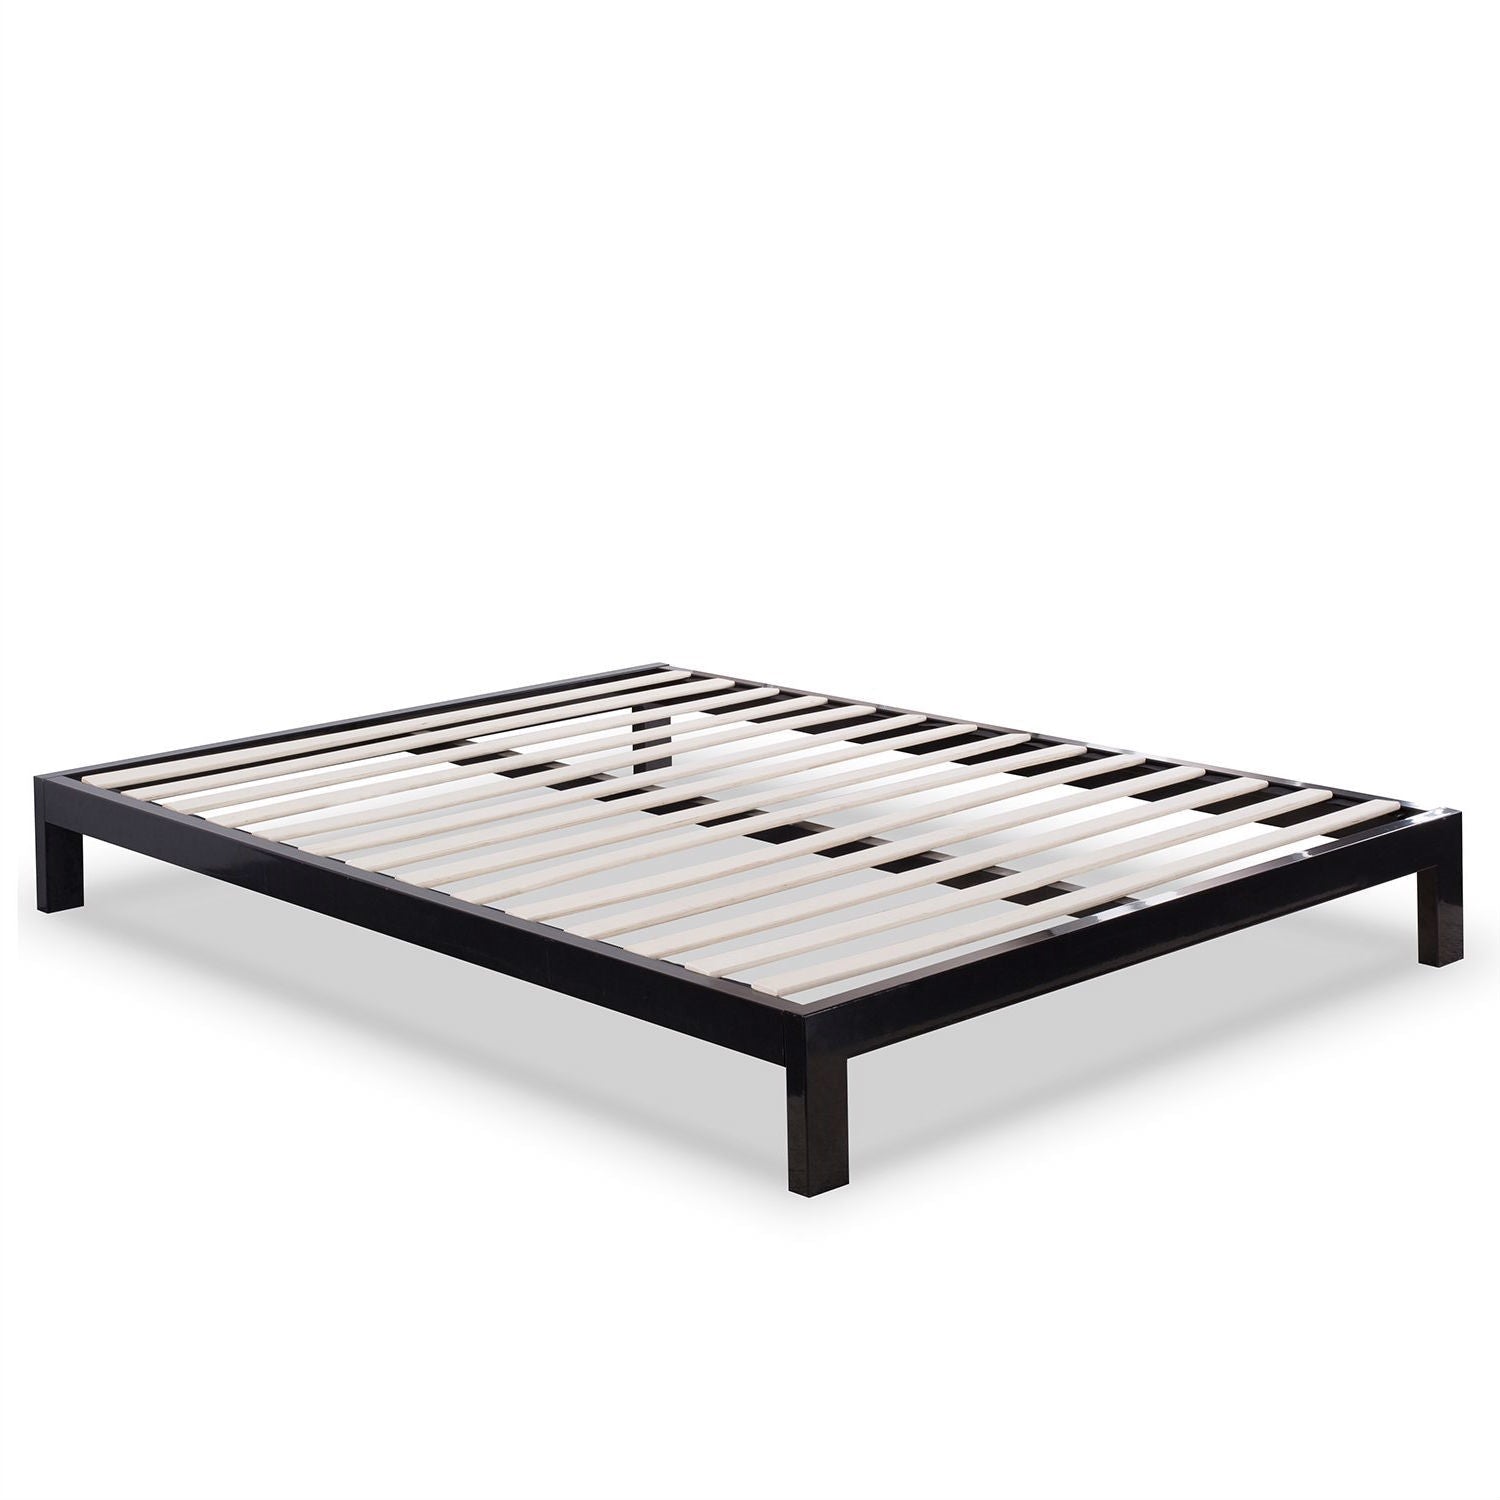 Bedroom > Bed Frames > Platform Beds - Full Size Contemporary Black Metal Platform Bed With Wooden Slats